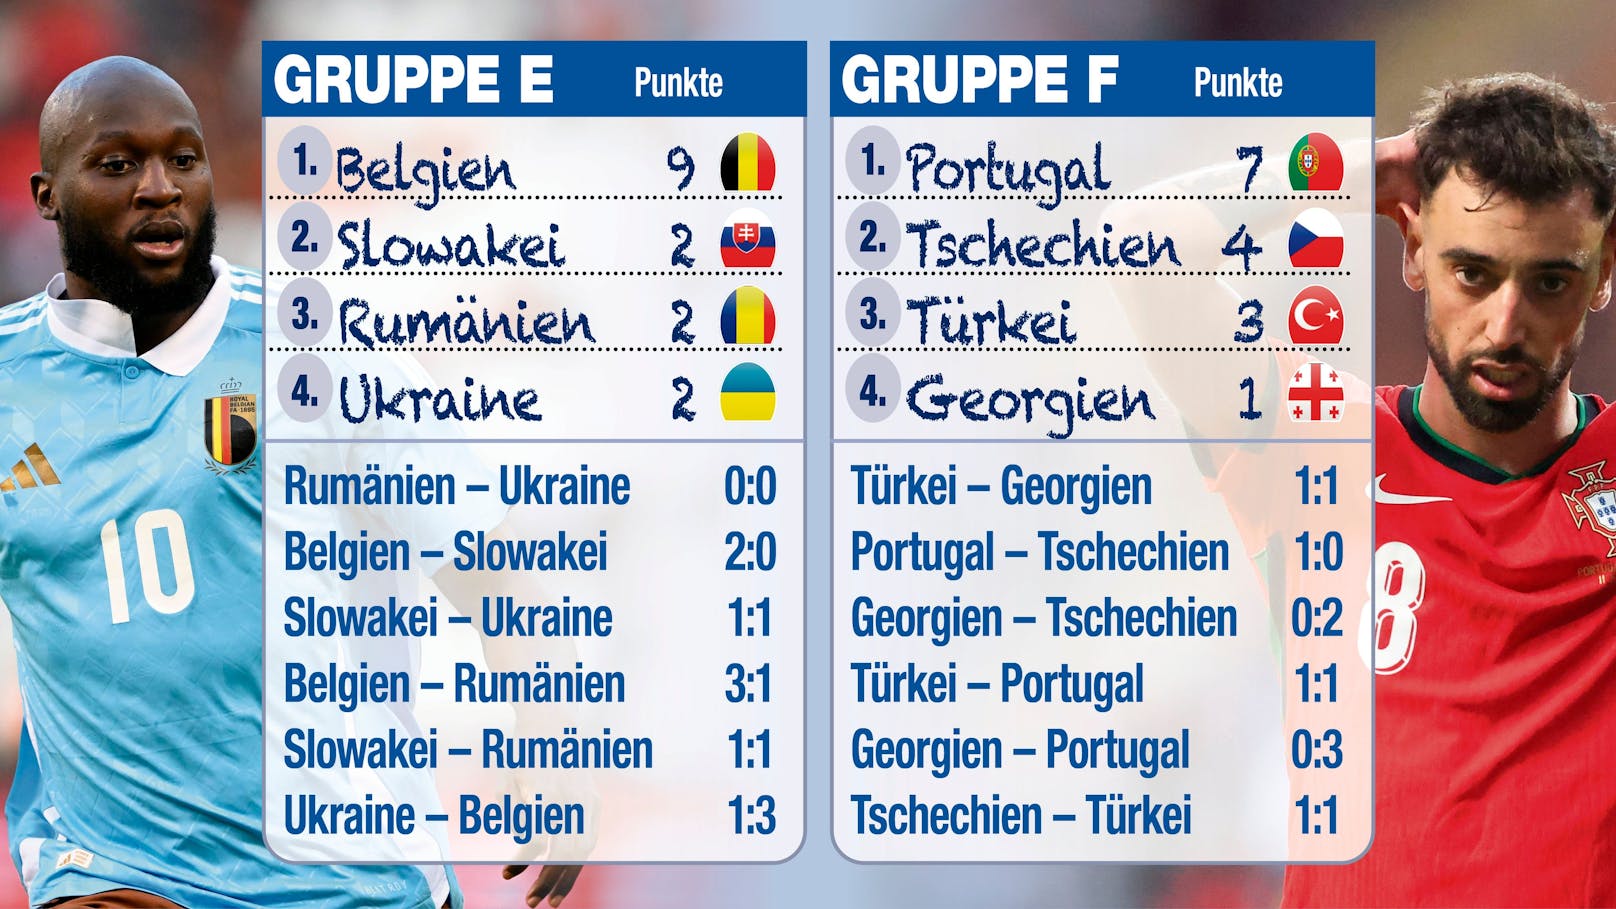 Belgien dominiert Gruppe E. Portugal wird der Favoritenrolle ebenso gerecht.